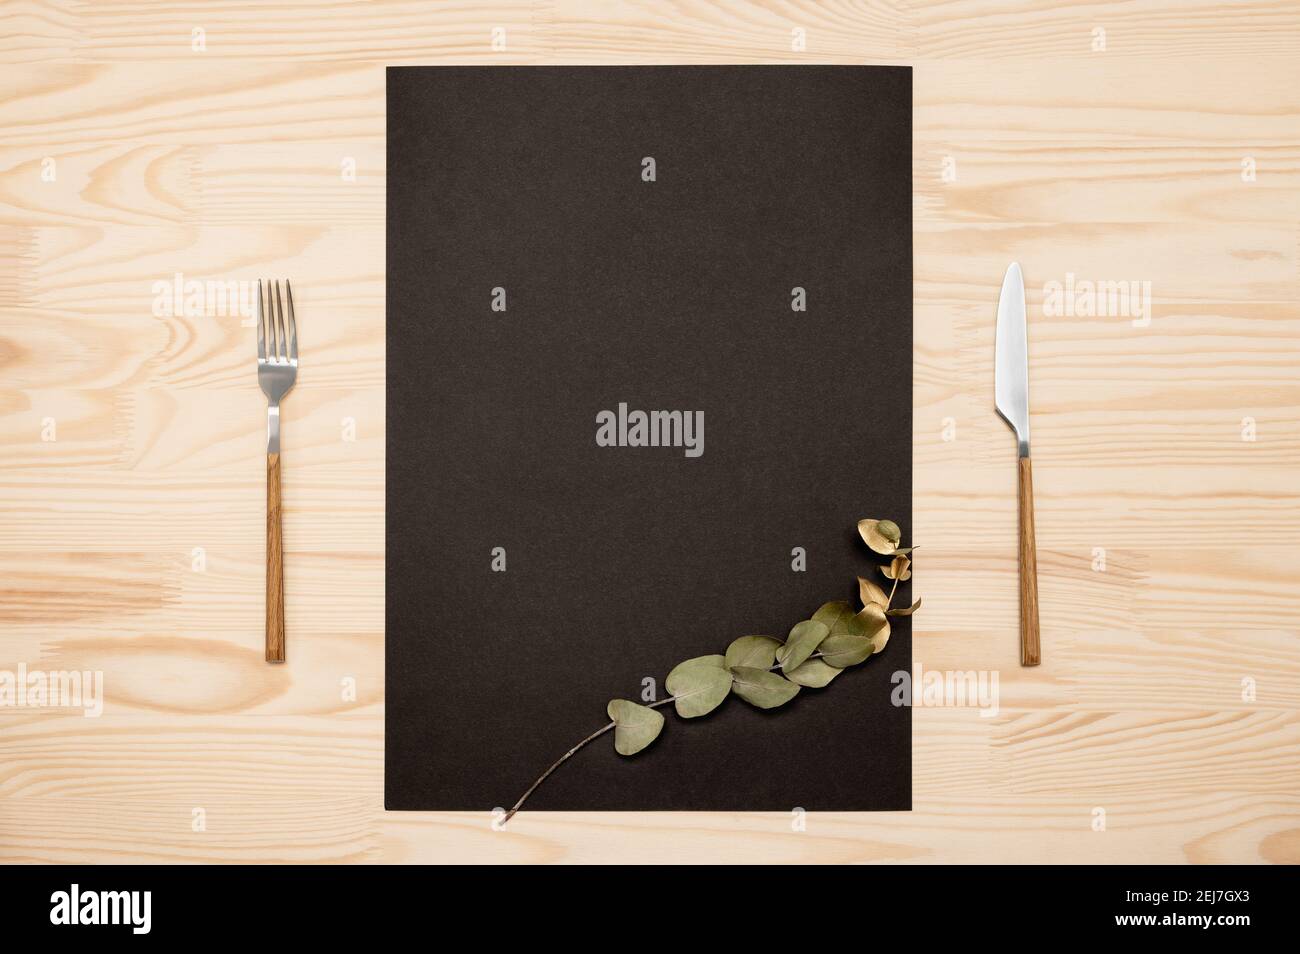 Coltello e forchetta con carta nera a4, a3 per testo di menu o ricette e rametto di eucalipto d'oro su tavola di legno. Mockup carta nera vuota e posate su rustico Foto Stock